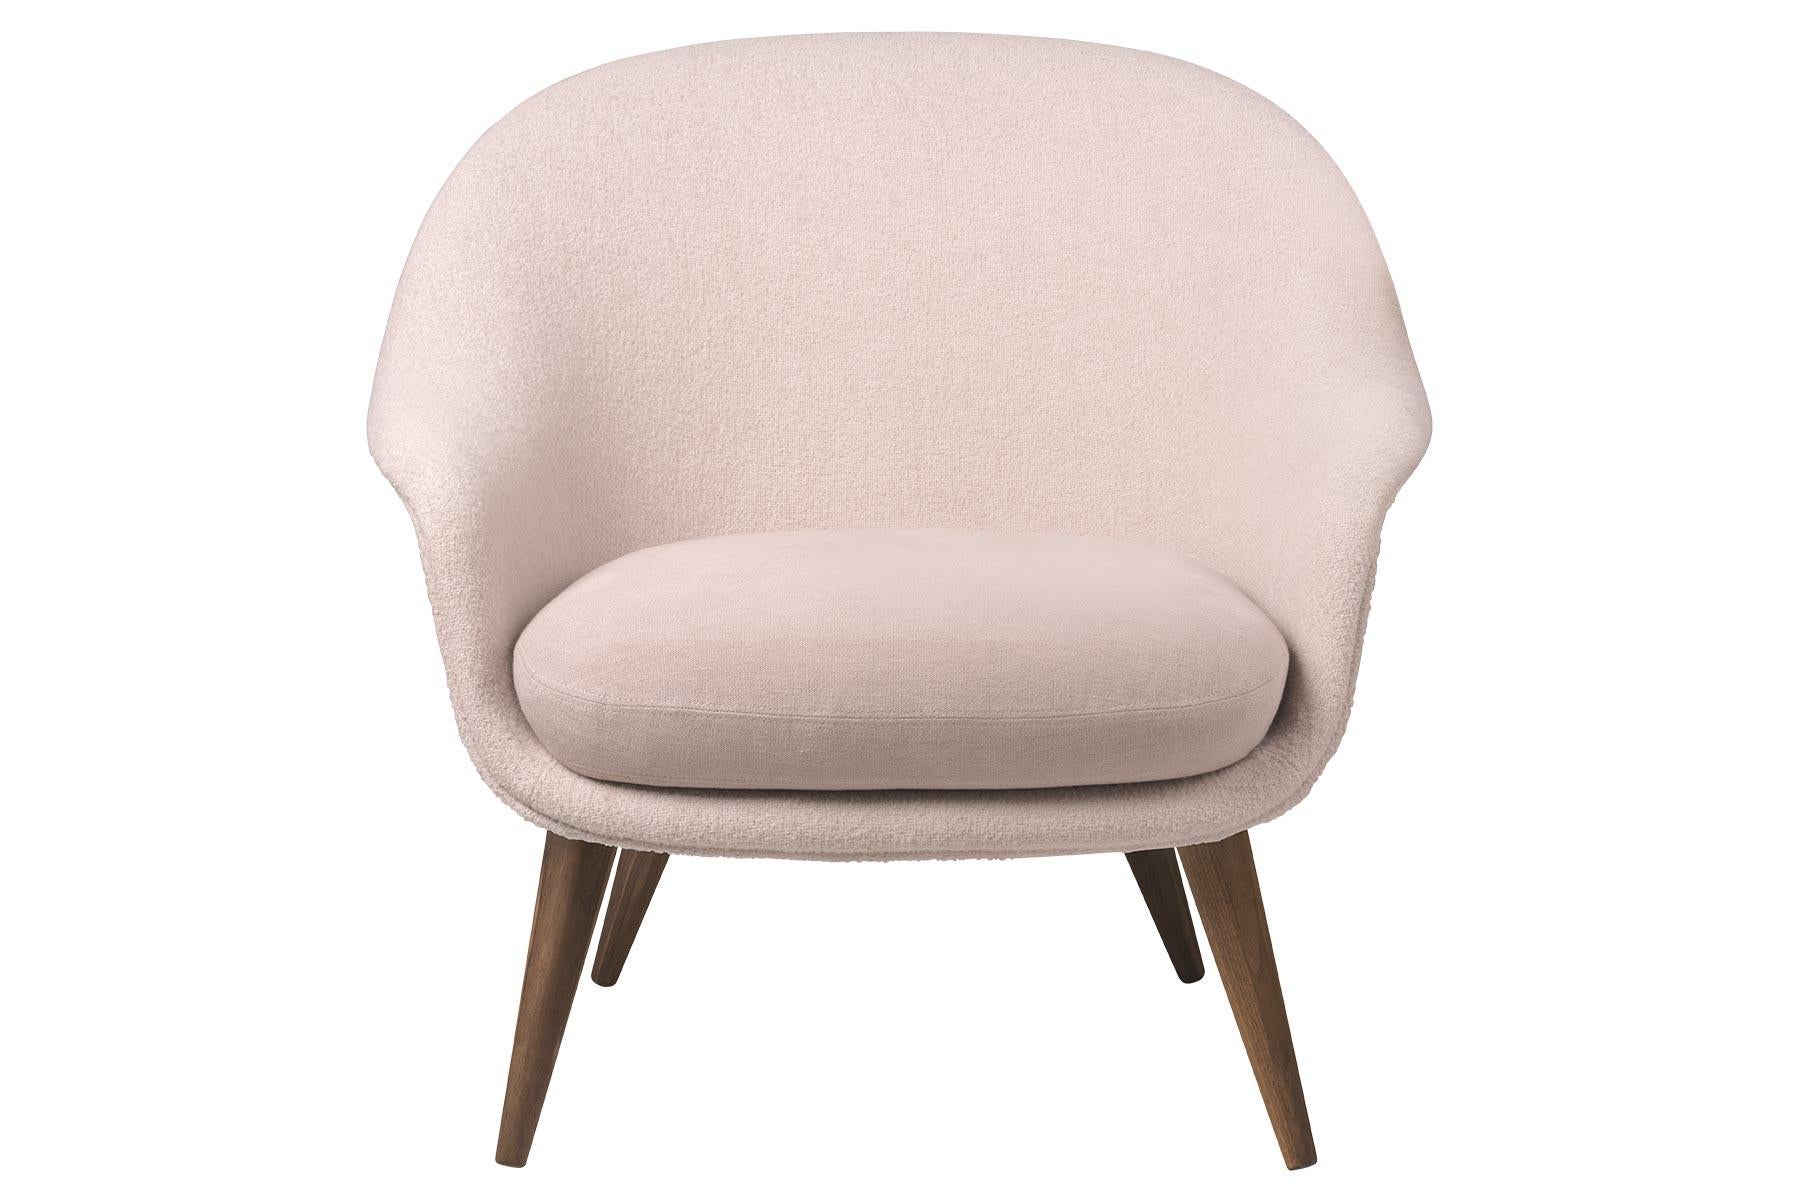 Der neue Bat Lounge Chair, den es in einer Version mit hoher und einer mit niedriger Rückenlehne gibt, wurde vom dänisch-italienischen Design-Duo GamFratesi entworfen. Der Stuhl weist starke Bezüge zu den interessanten Eigenschaften von Fledermäusen